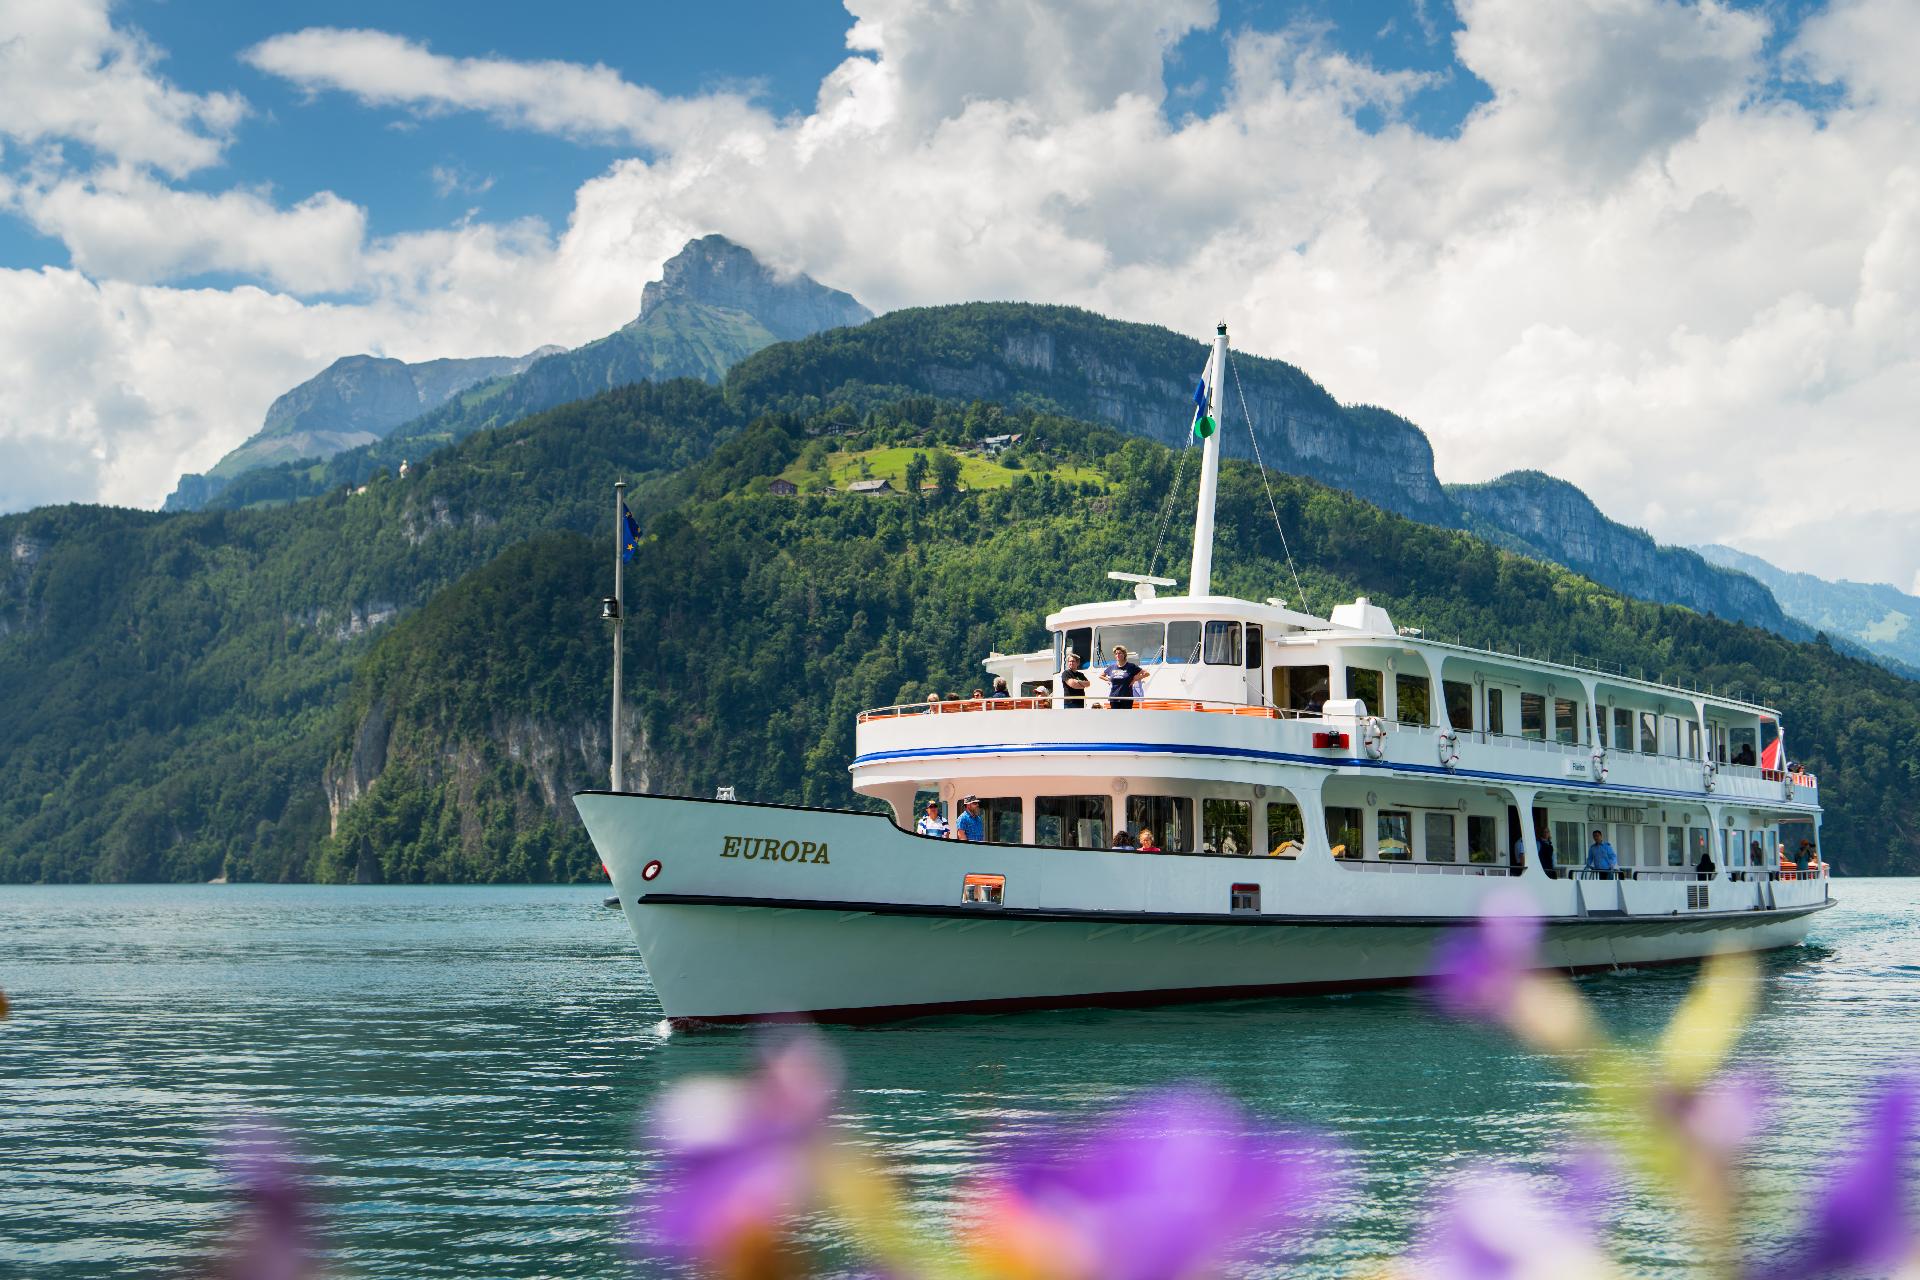 Buque MS Europa en el lago de Lucerna